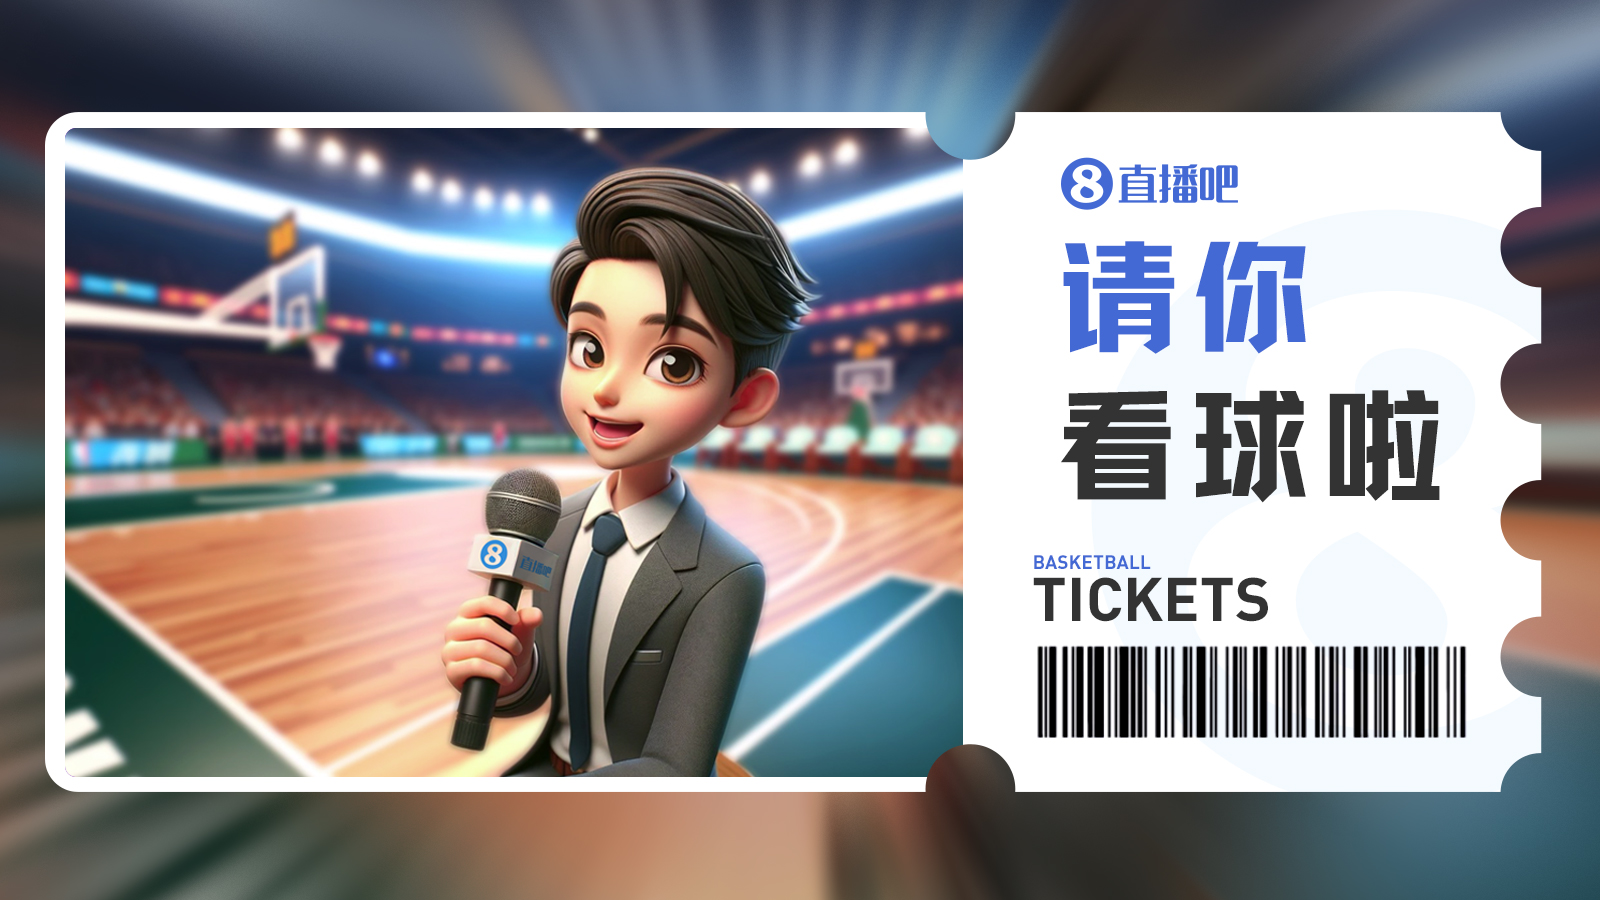 广东球迷看过来留言抽3月30日『广东vs广州』免费门票咯